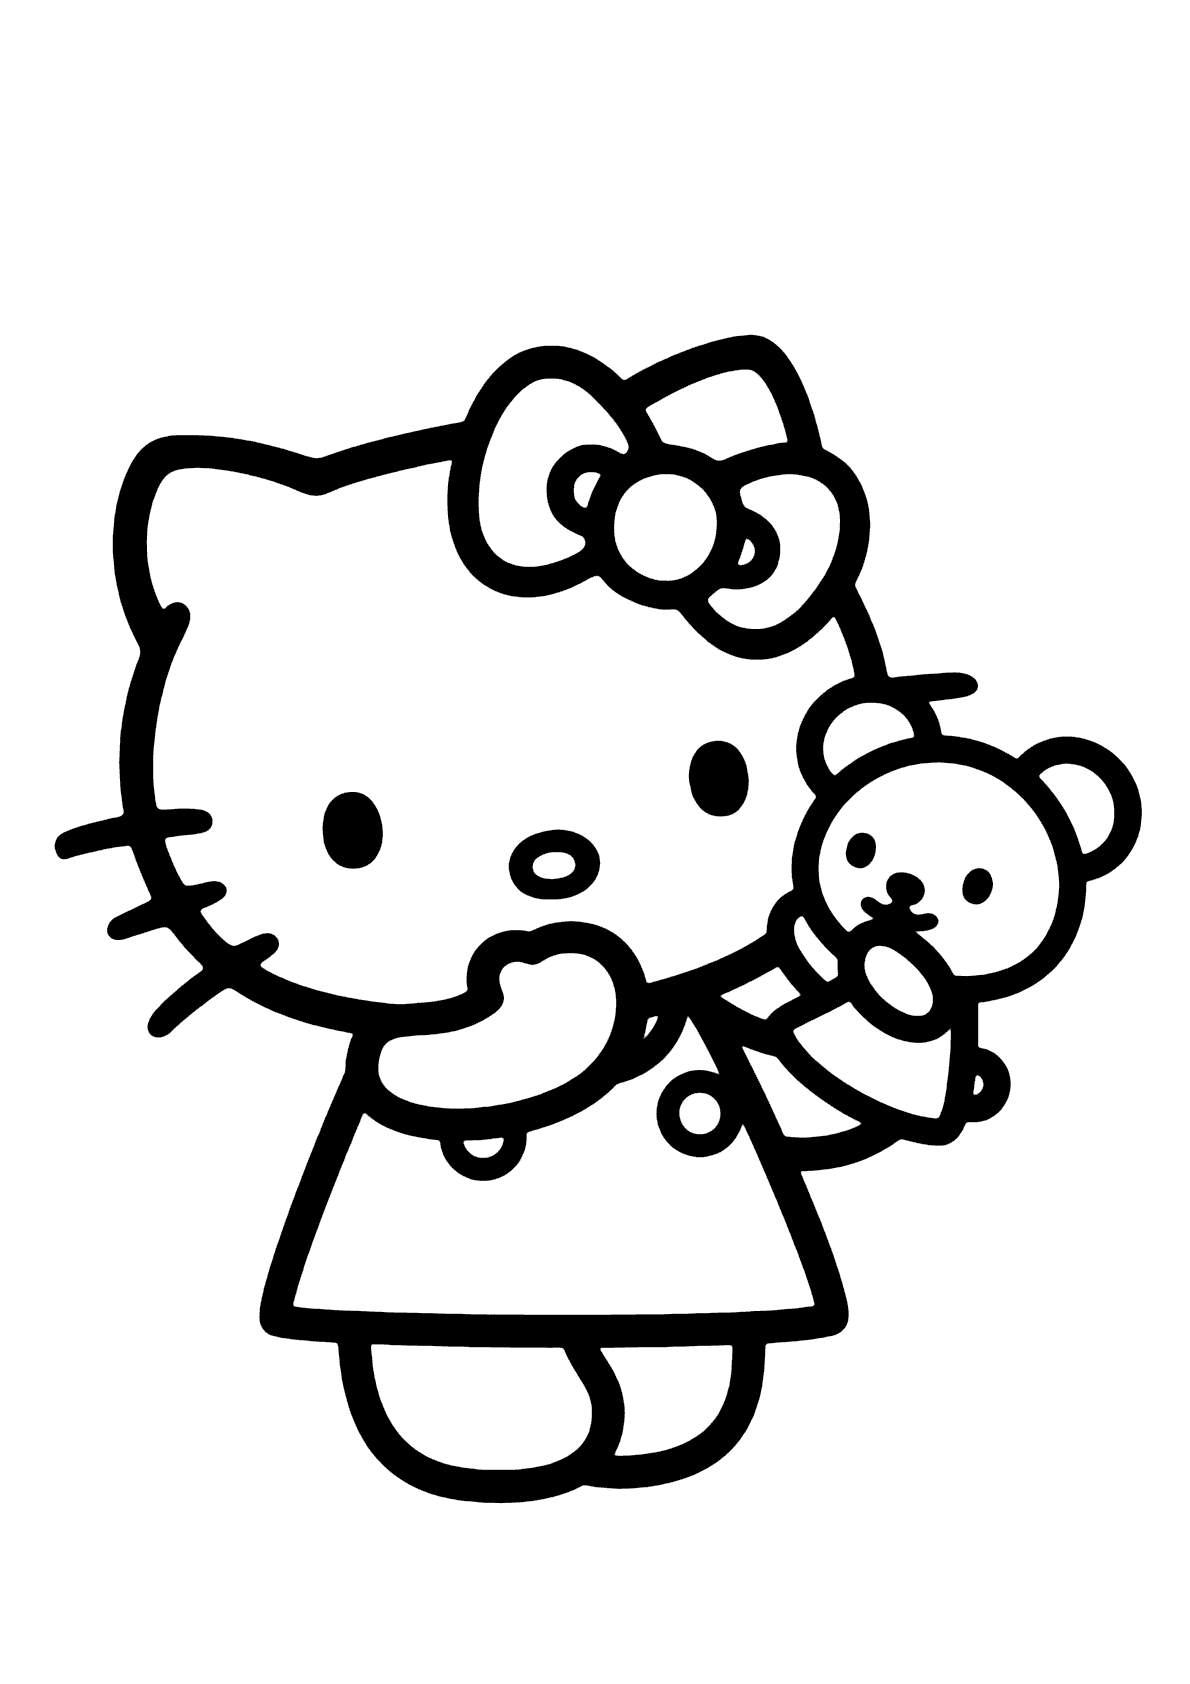 Desenhos para colorir de desenho da hello kitty com seus amigos